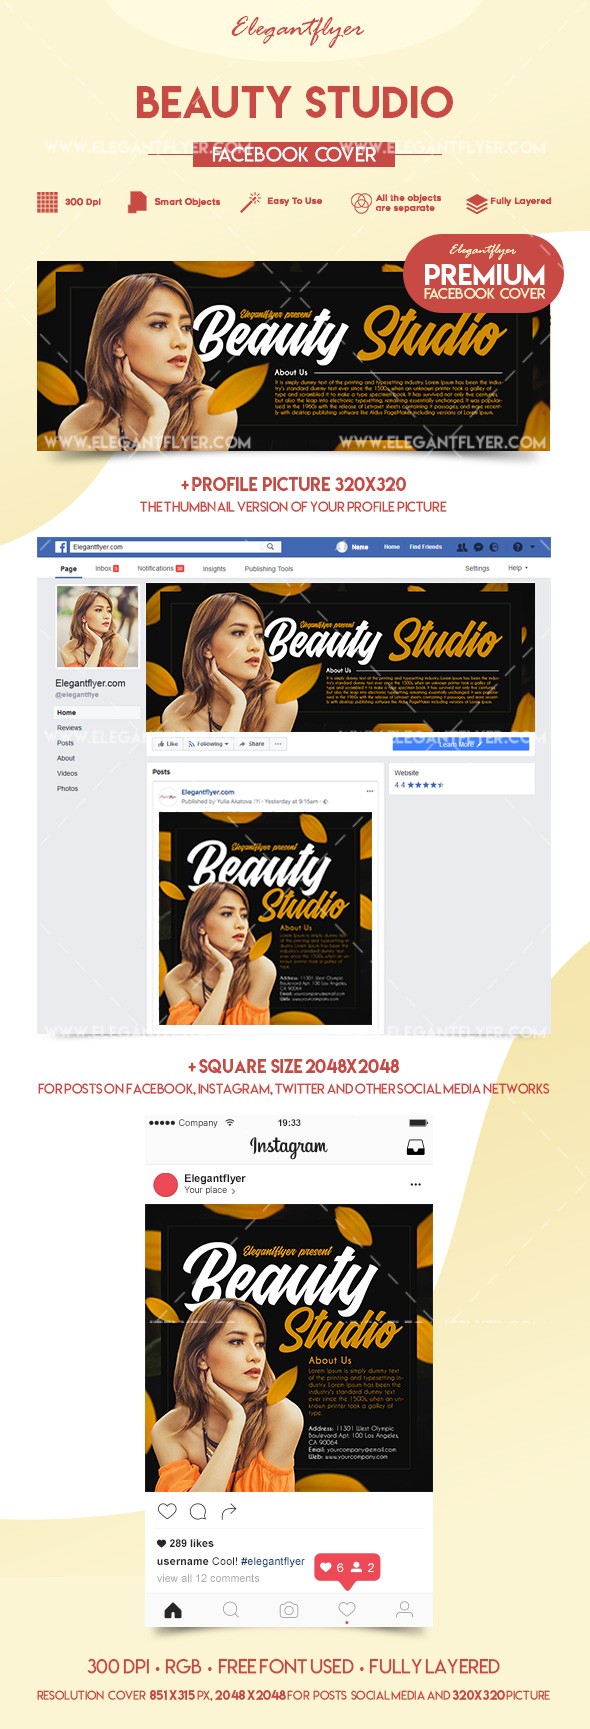 Estúdio de Beleza no Facebook by ElegantFlyer